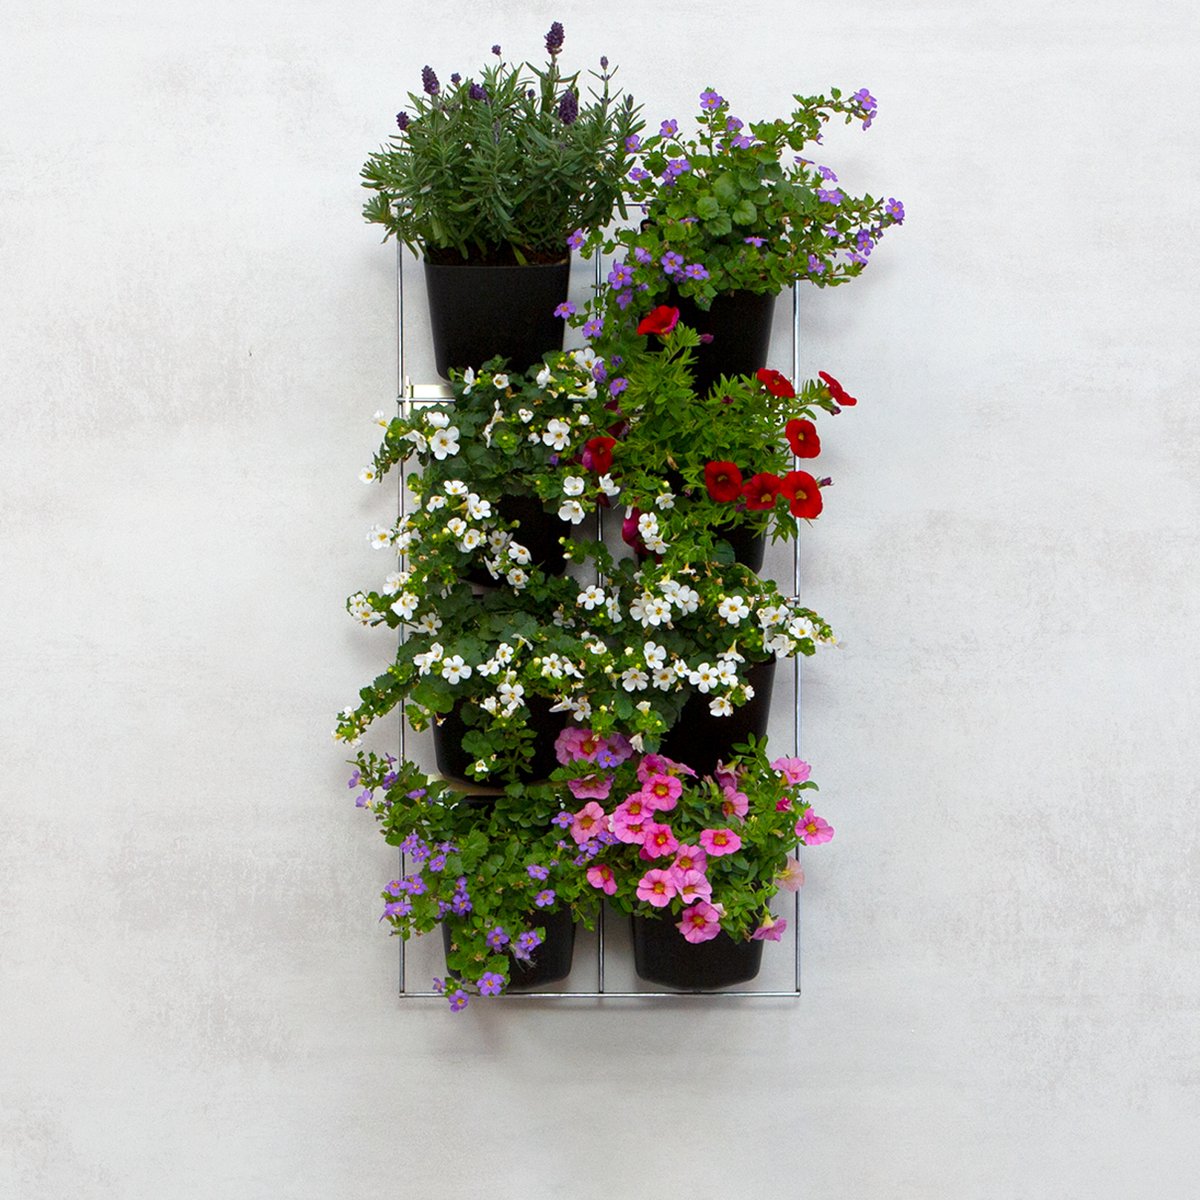 Mijn Verticale Tuin - Voor Buiten - Compleet Startpakket (Small) 30cm x 60cm - 8 Bakjes - Plantenbak aan de muur - Groene wand - Groene muur - Moestuin - Balkonbak - Plantenmuur